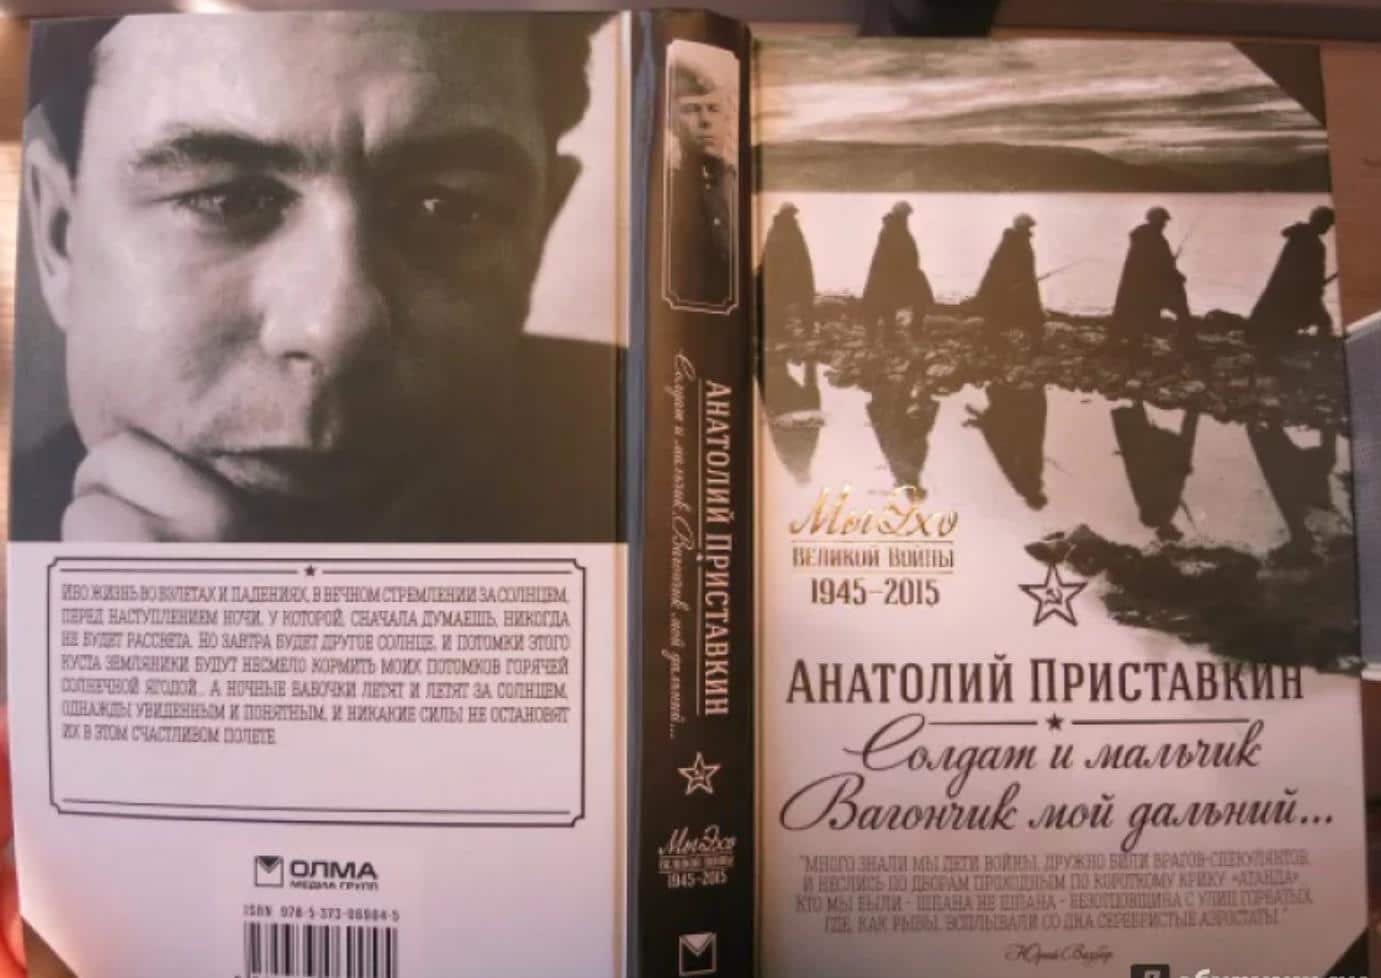 Анатолий Приставкин: биография, карьера, достижения